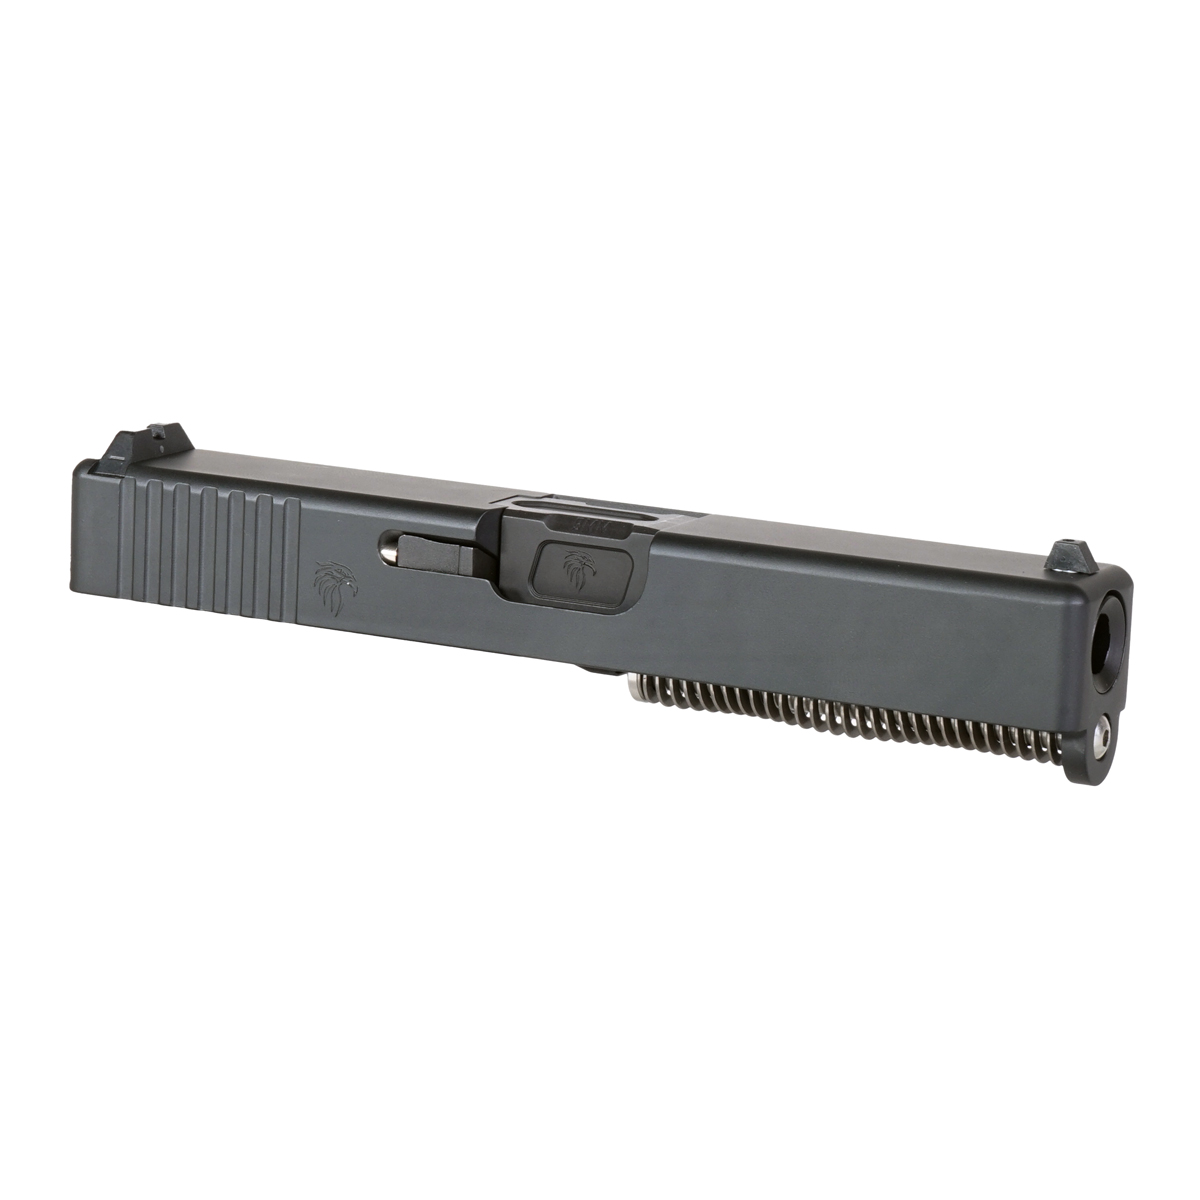 DTT 'Astrid' 9mm Complete Slide Kit - Glock 19 Gen 1-3 Compatible